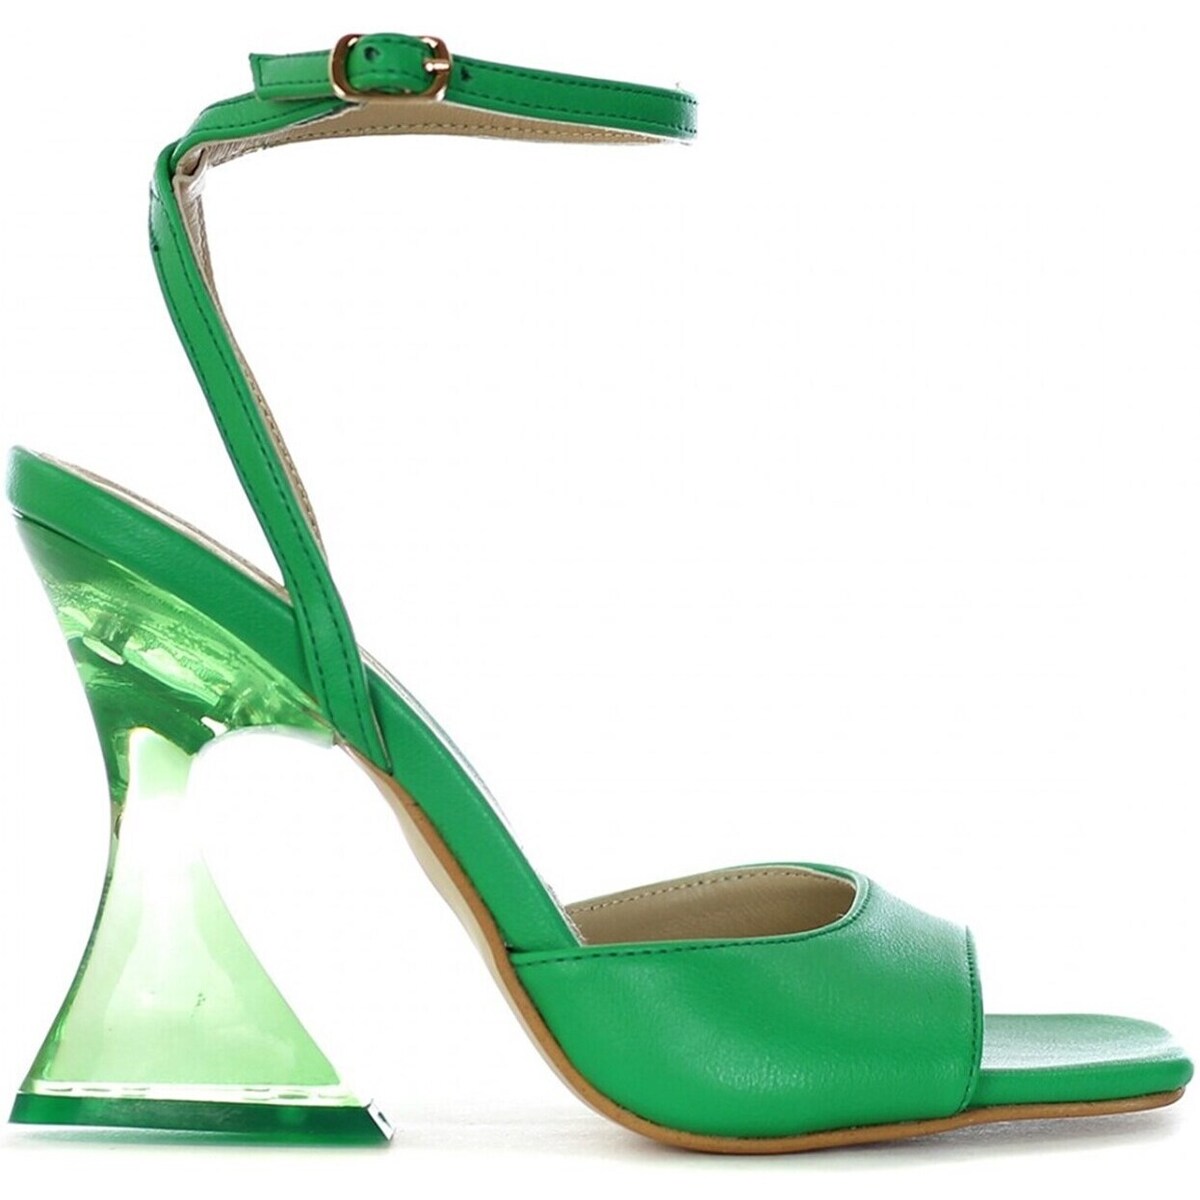 Chaussures Femme Vêtements femme à moins de 70 Tsakiris Mallas crystal Sandales Femme vert acide Vert